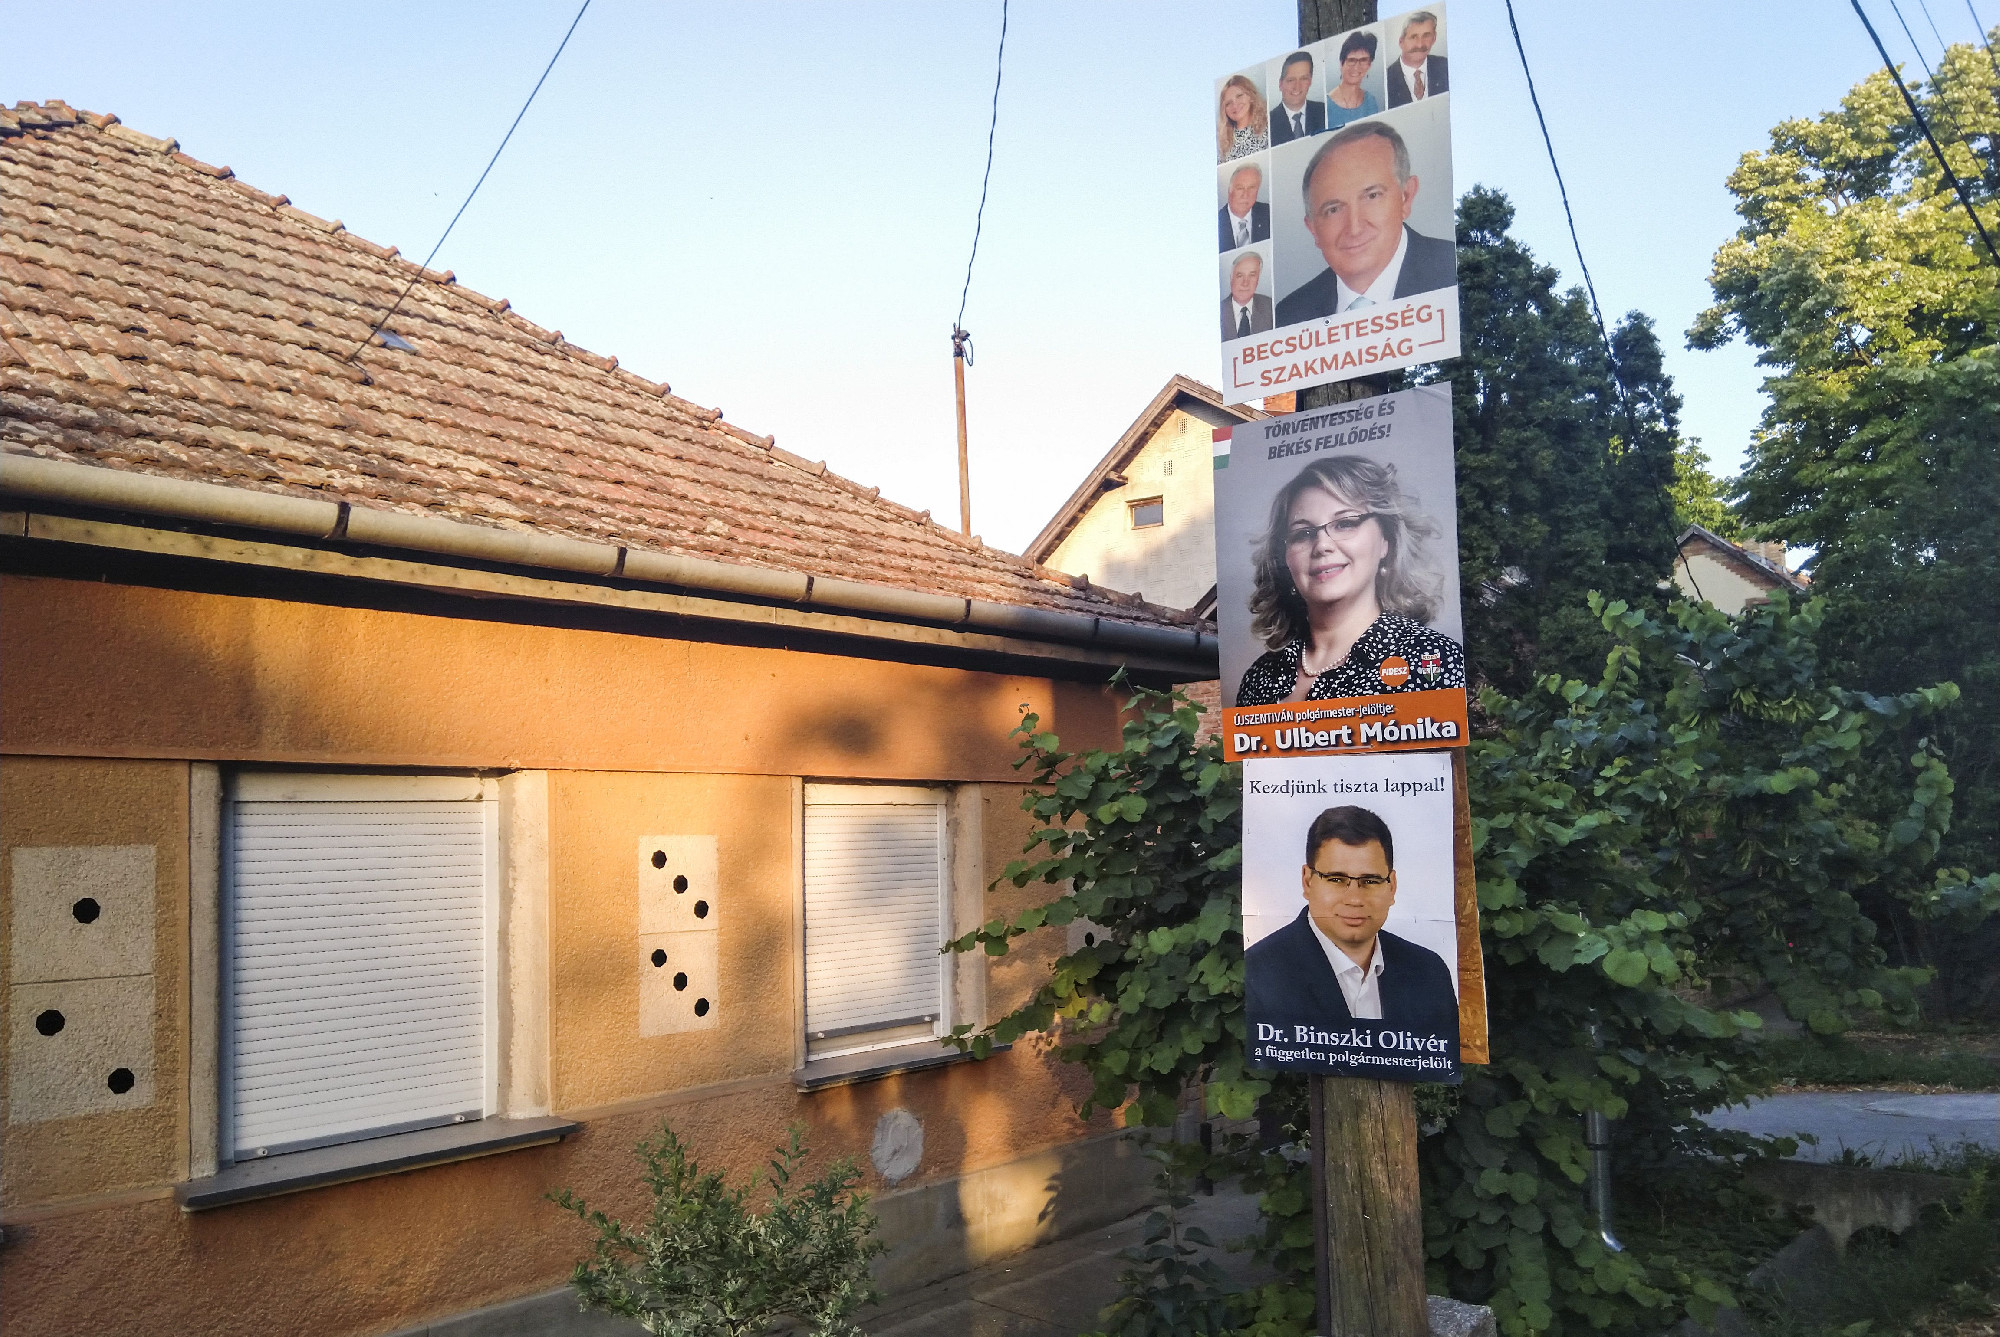 Így győzte le a Fideszből kizárt jelölt a fideszest